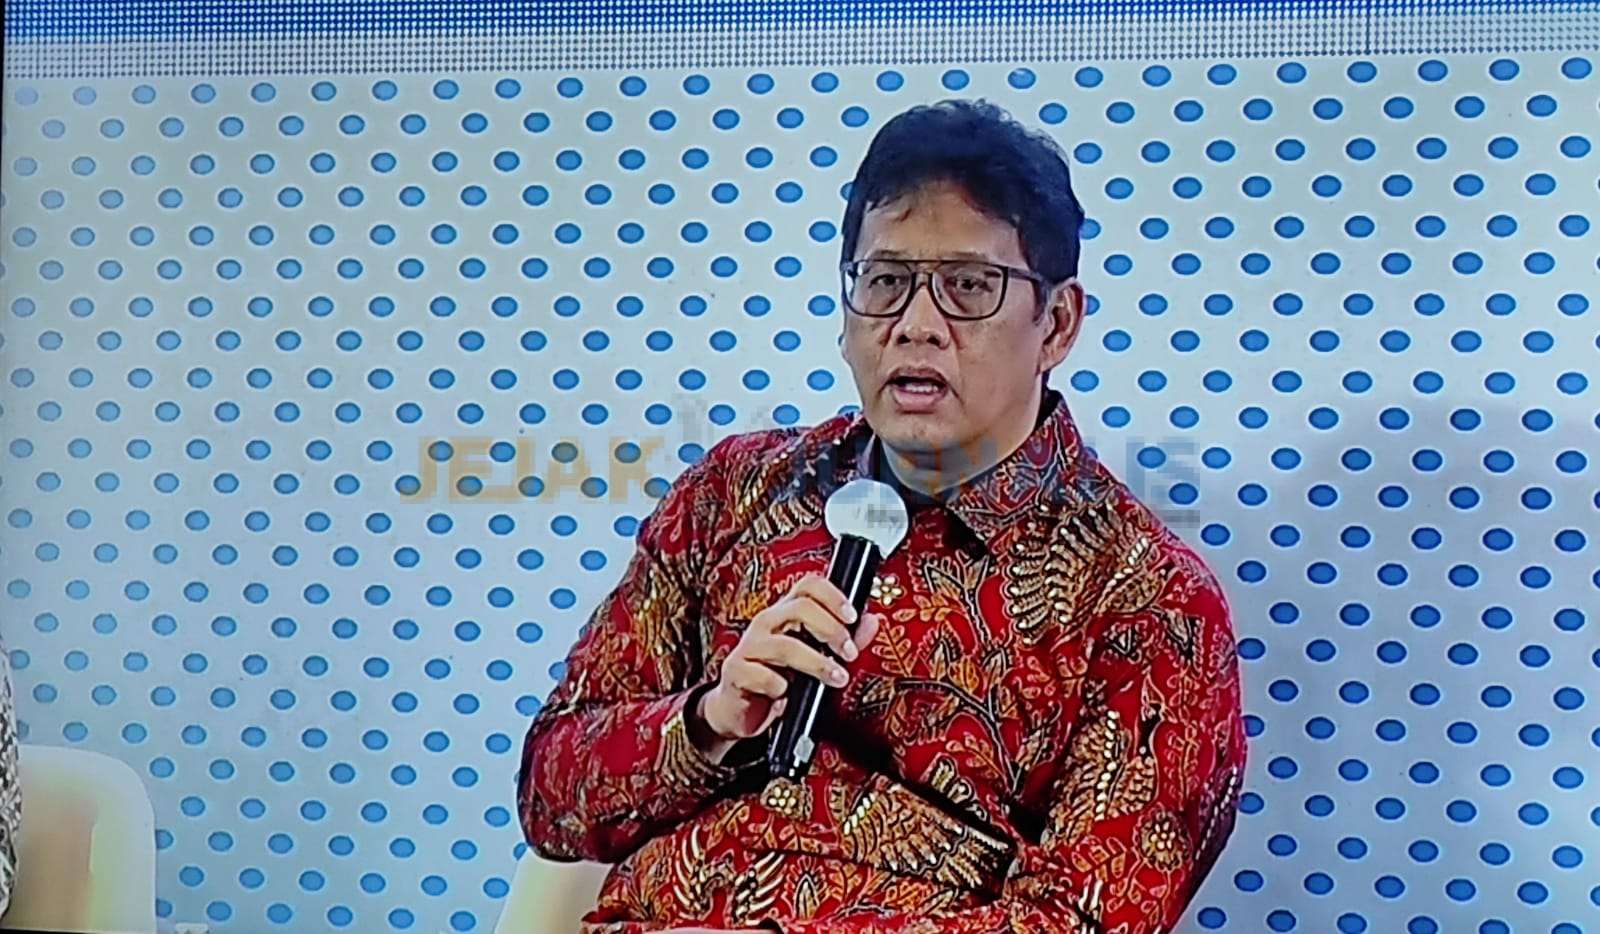 Ketua DK LPS, Kinerja Positif Industri Jasa Keuangan Demi Pertumbuhan Perekonomian Indonesia